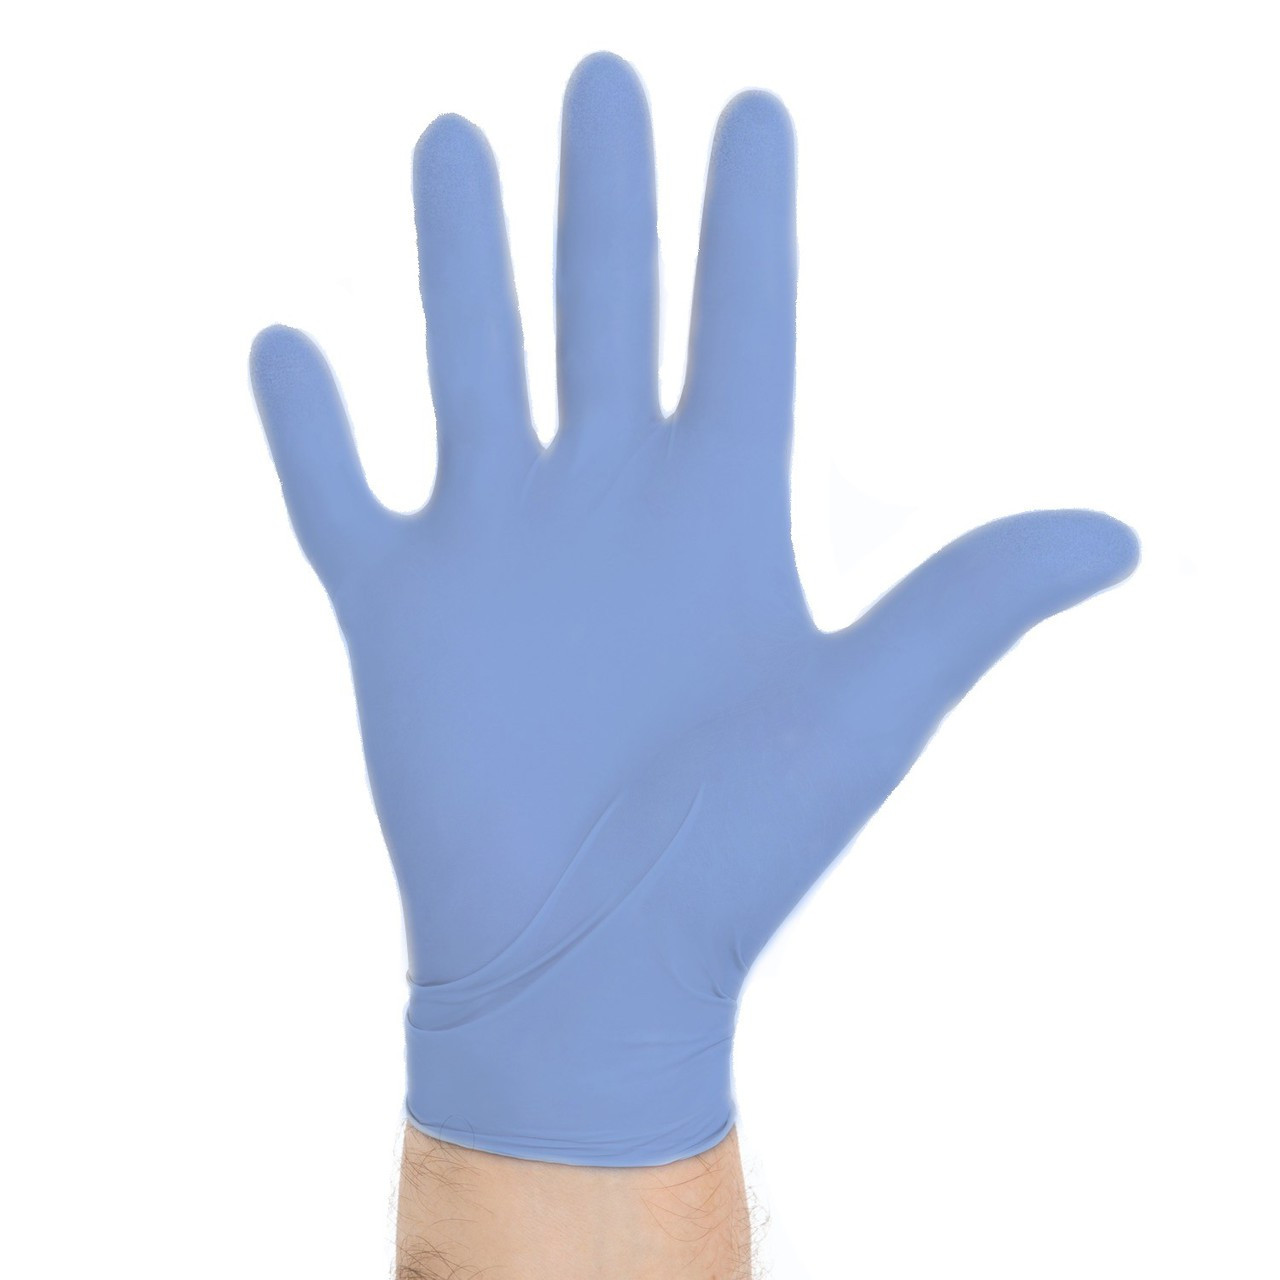 AQUASOFT Exam Gloves | USAMedicalSurgical.com